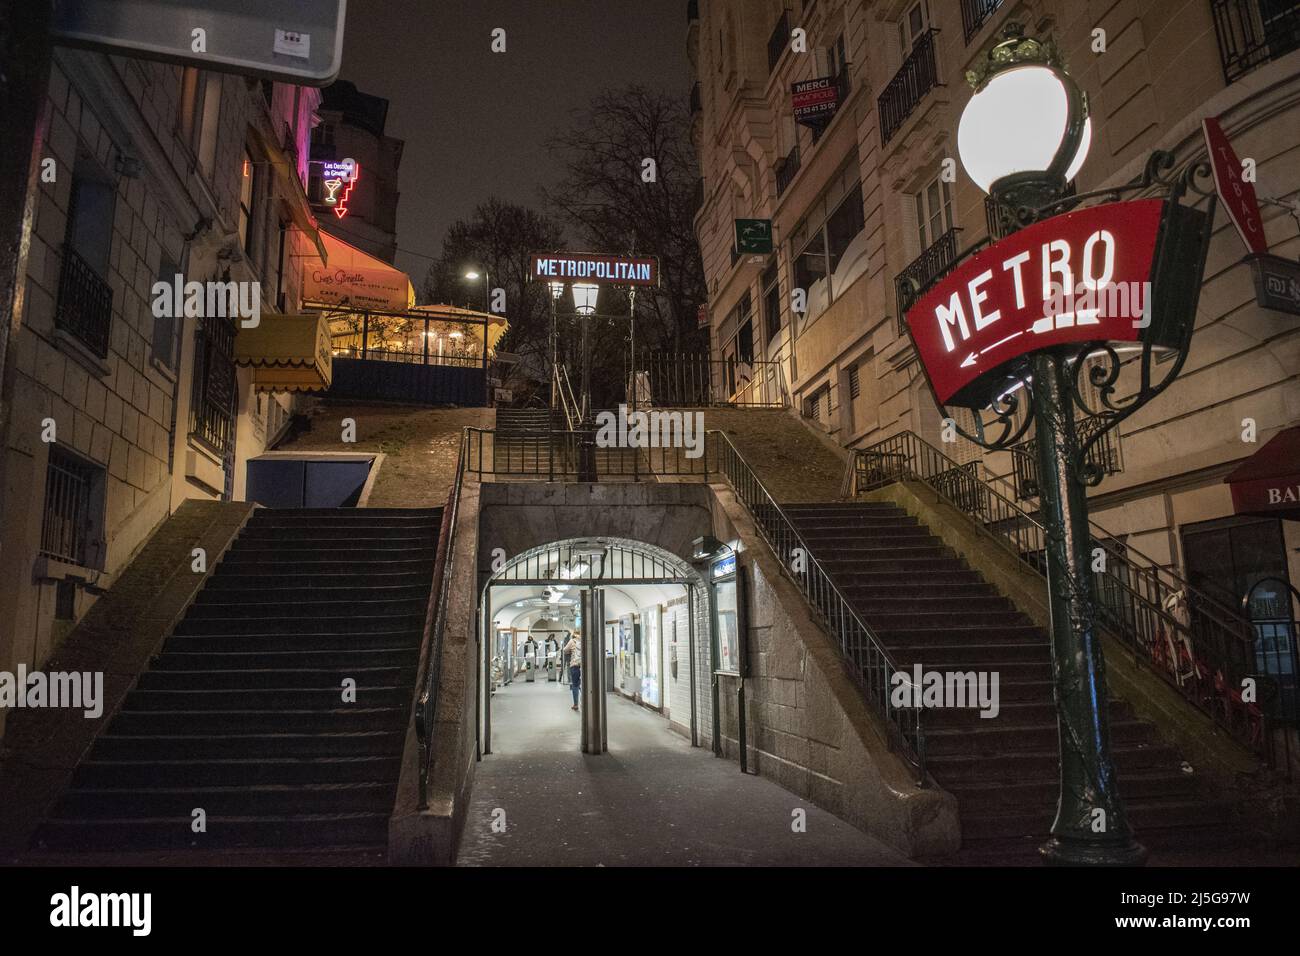 Paris, France : vue de nuit, feux de rue et enseignes au néon à l'entrée de la station de métro Montmartre, célèbre colline dans le nord du 18th arrondissement Banque D'Images